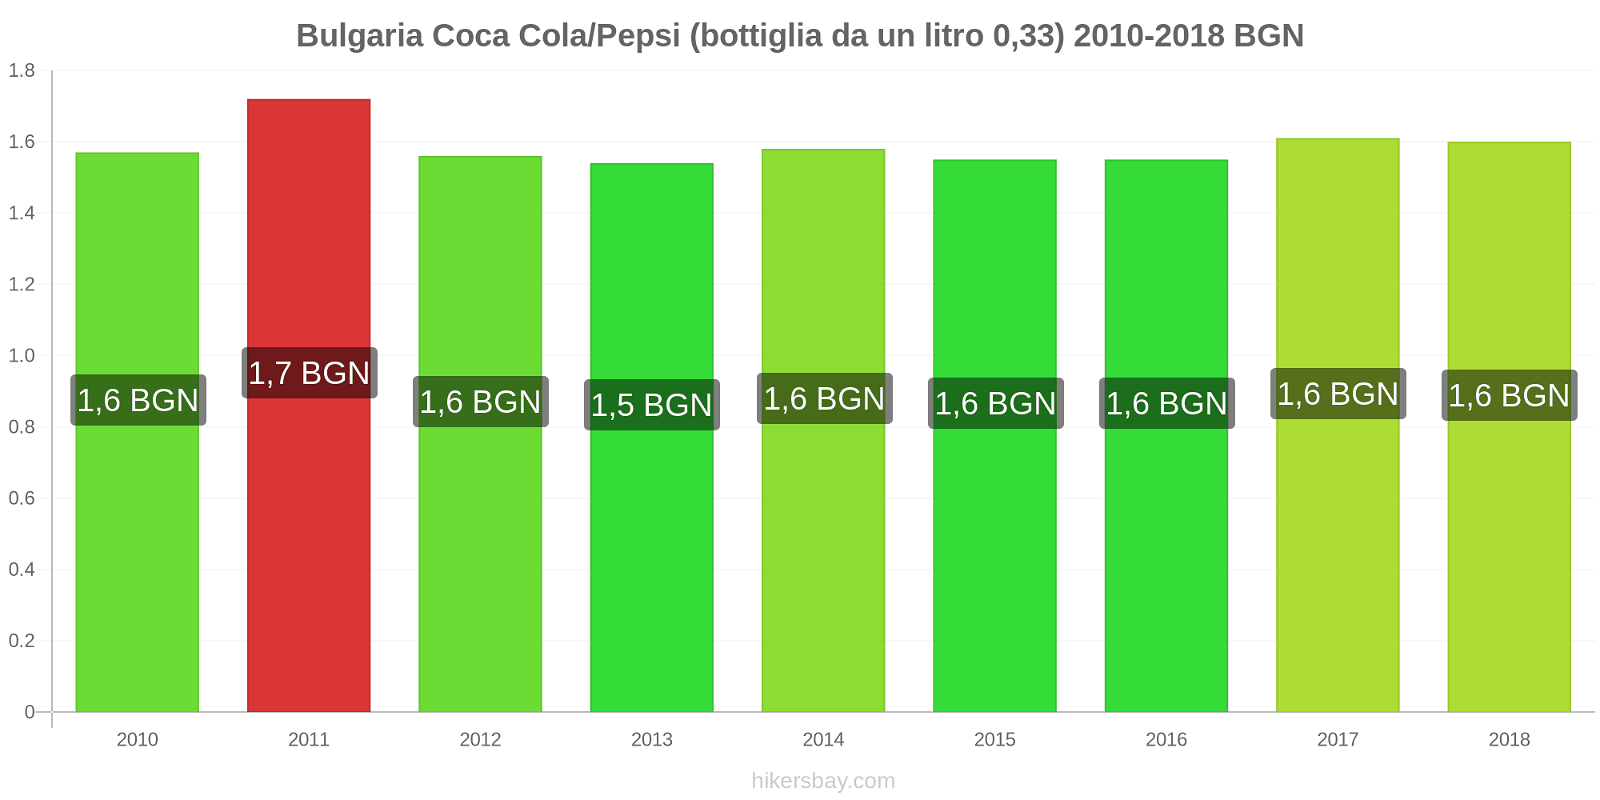 Bulgaria cambi di prezzo Coca-Cola/Pepsi (bottiglia da 0.33 litri) hikersbay.com